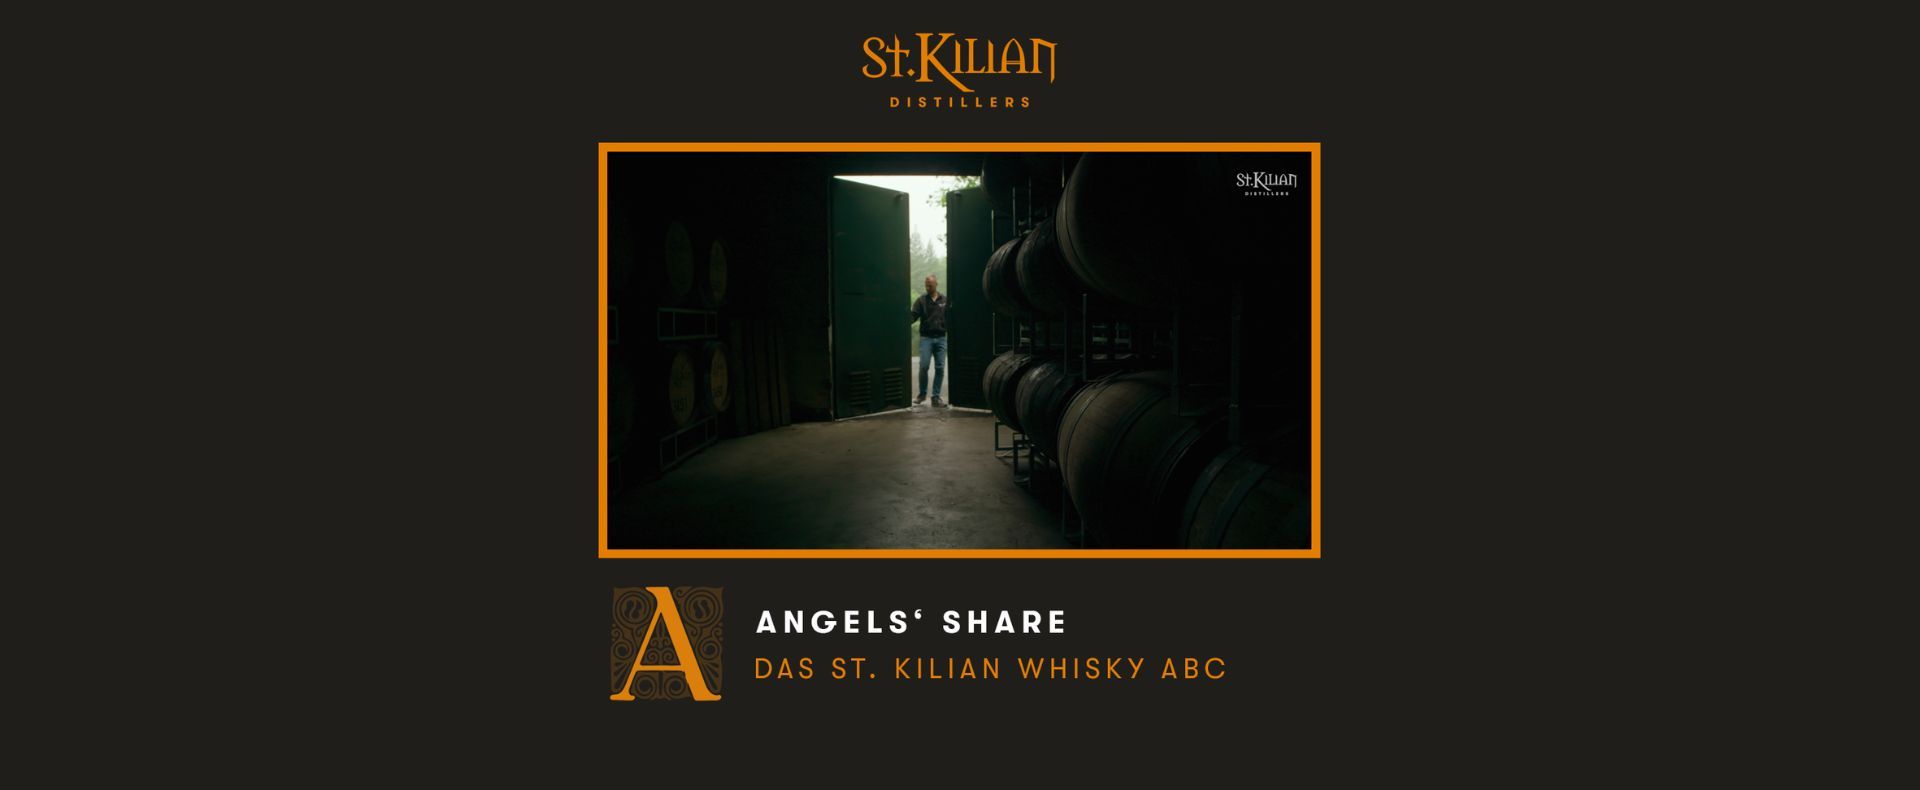 Whisky ABC - A like Angel' Share